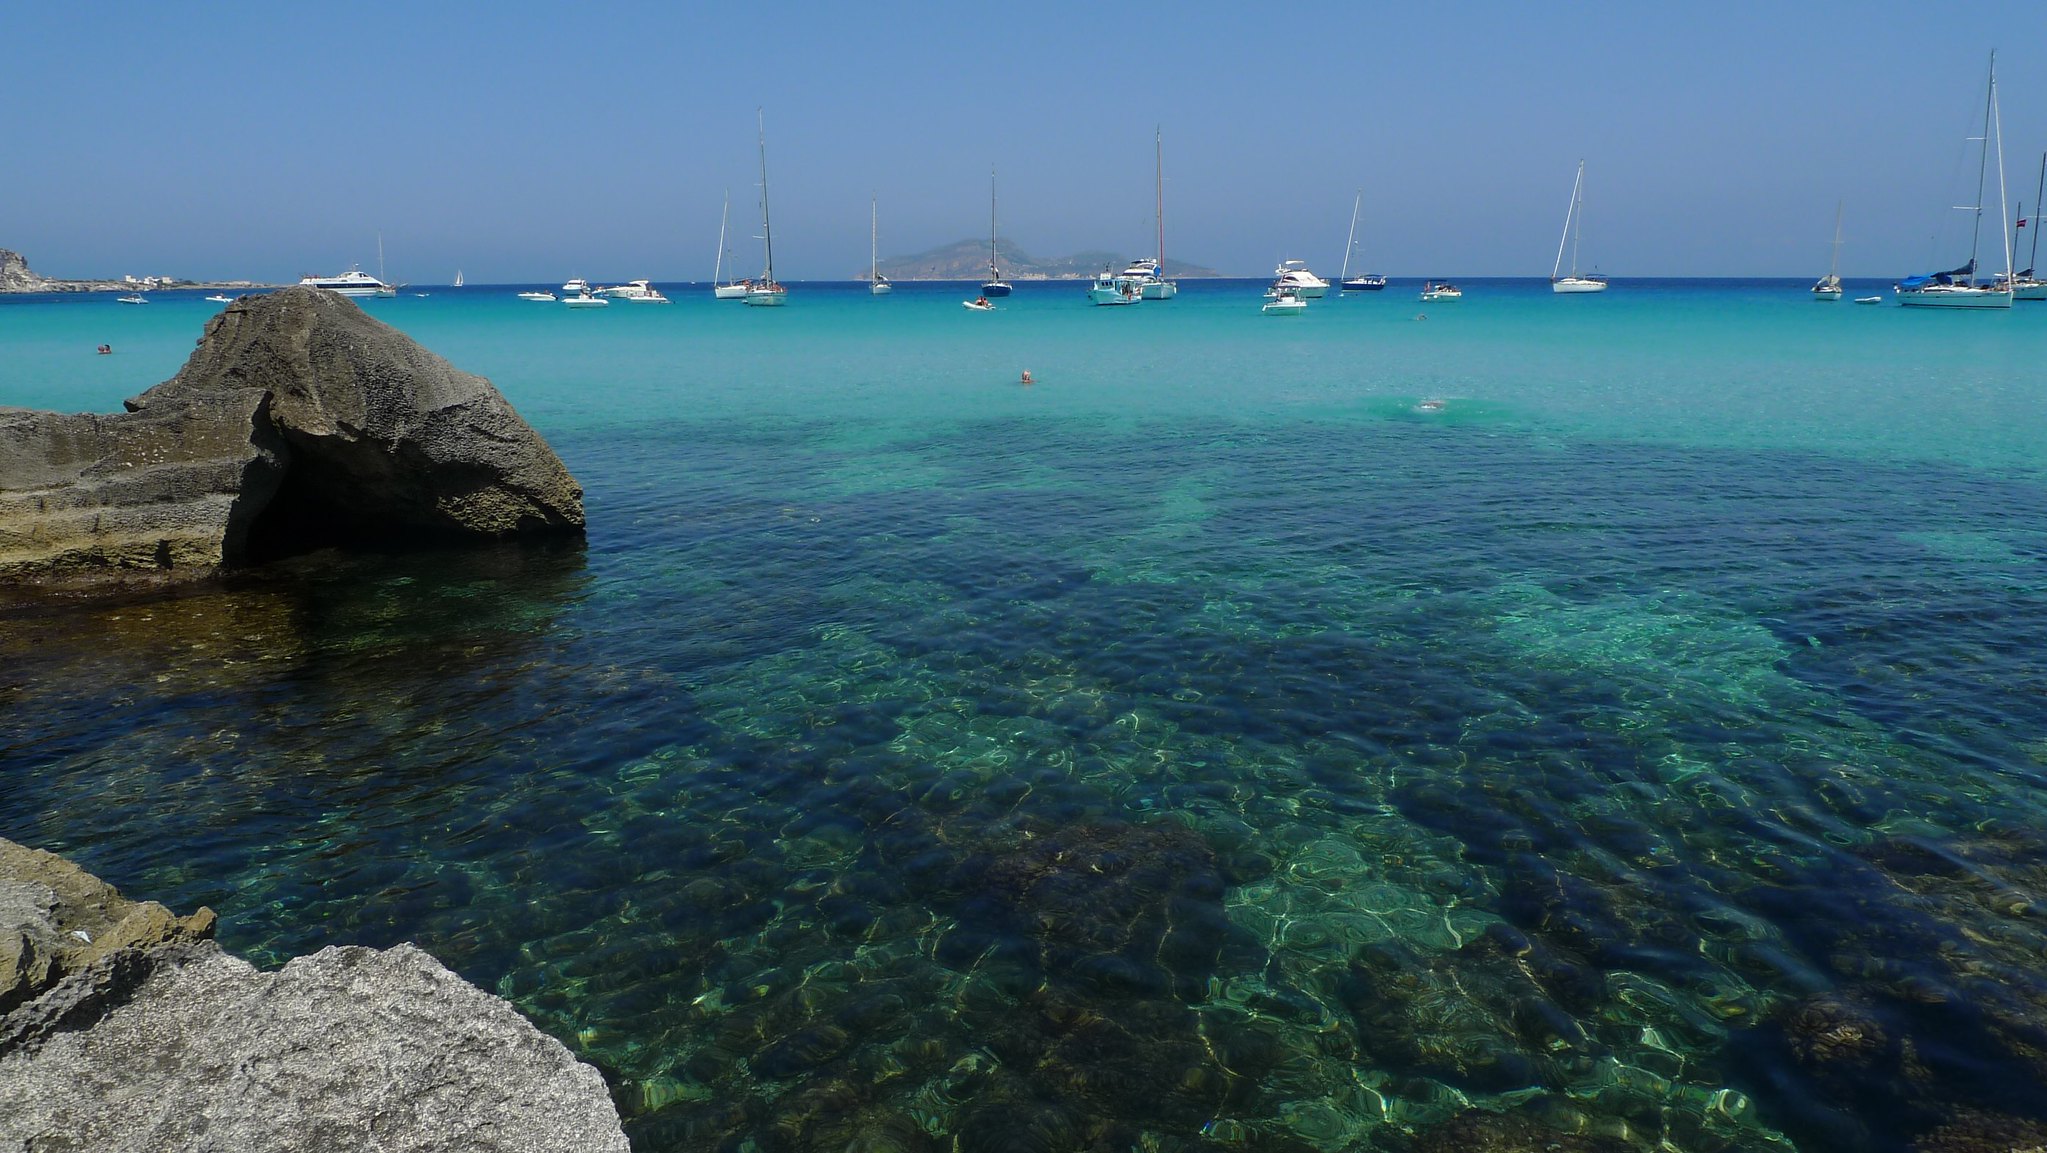 Inmersión de finales de verano, dos sitios sicilianos en el Top 10 de paraísos mediterráneos